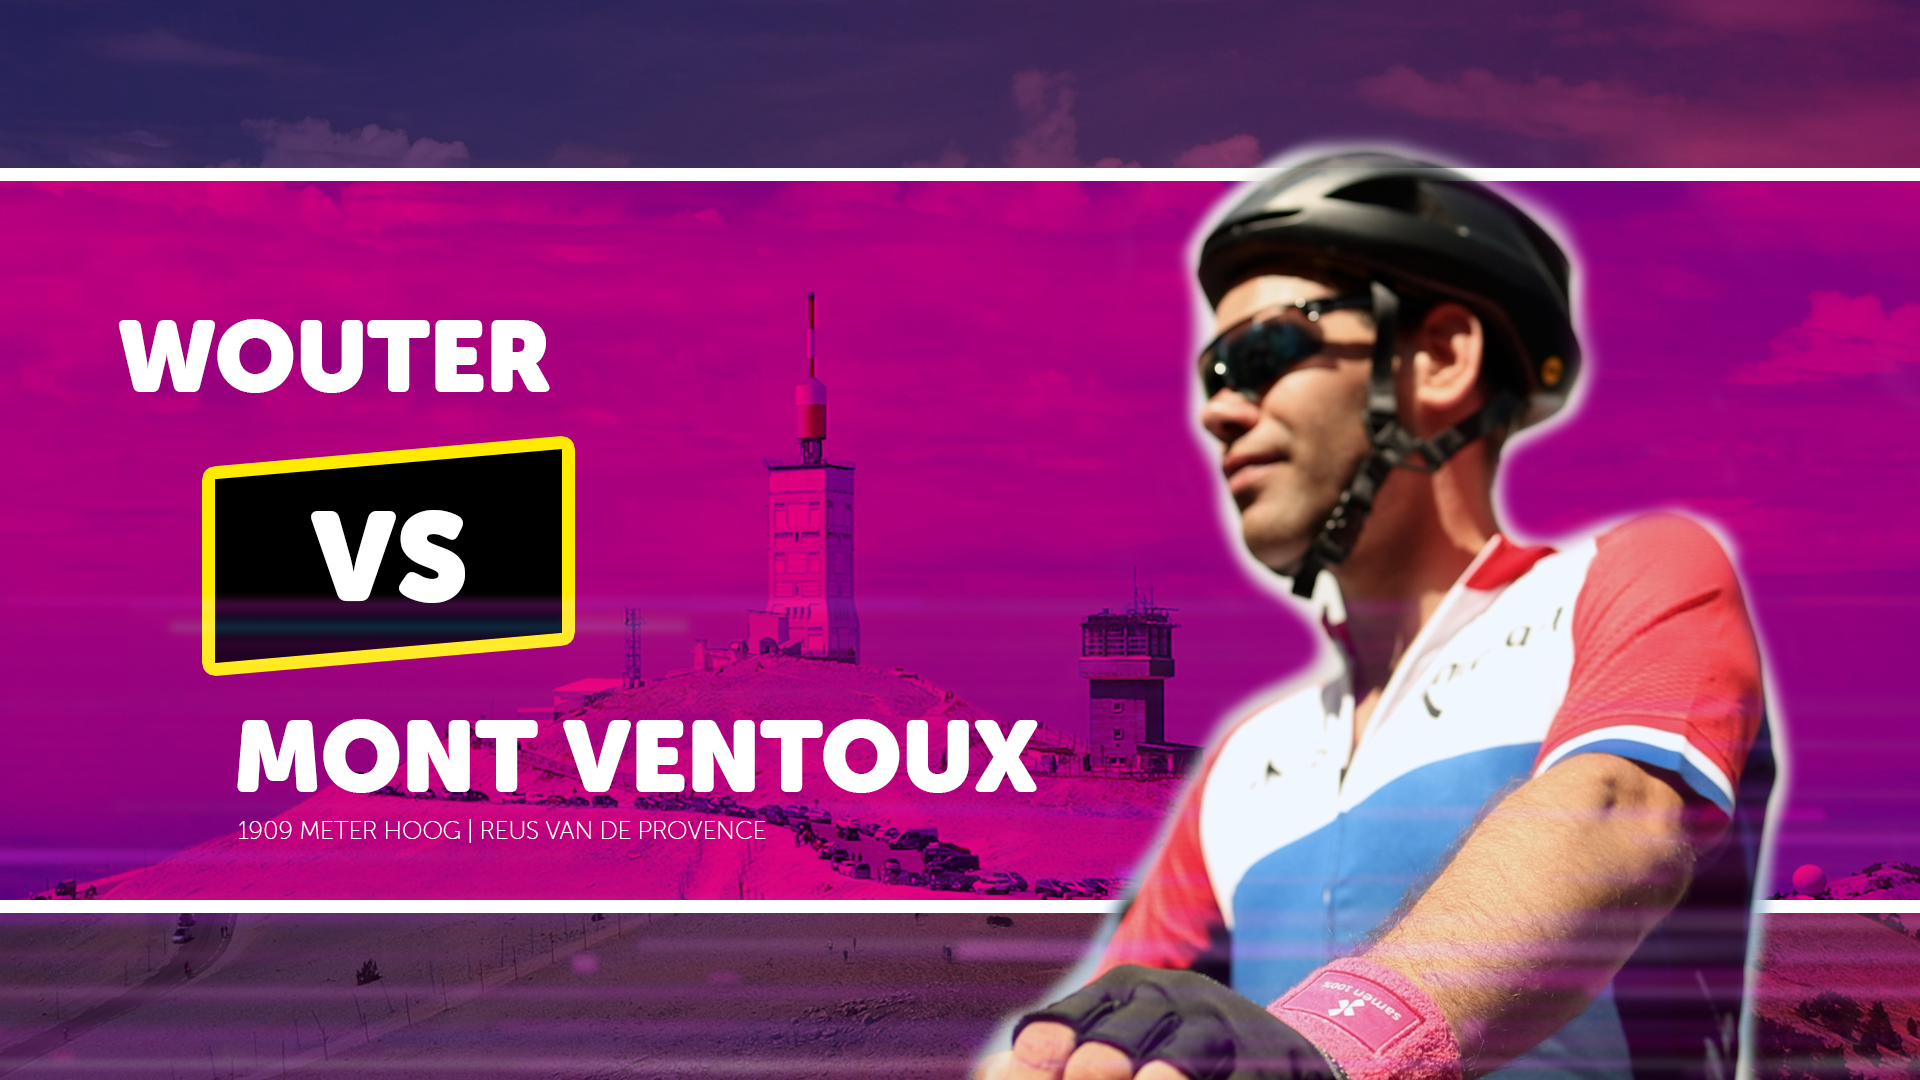 Wouter in wielrenkleding en een helm staat klaar om de Mont Ventoux te beklimmen.